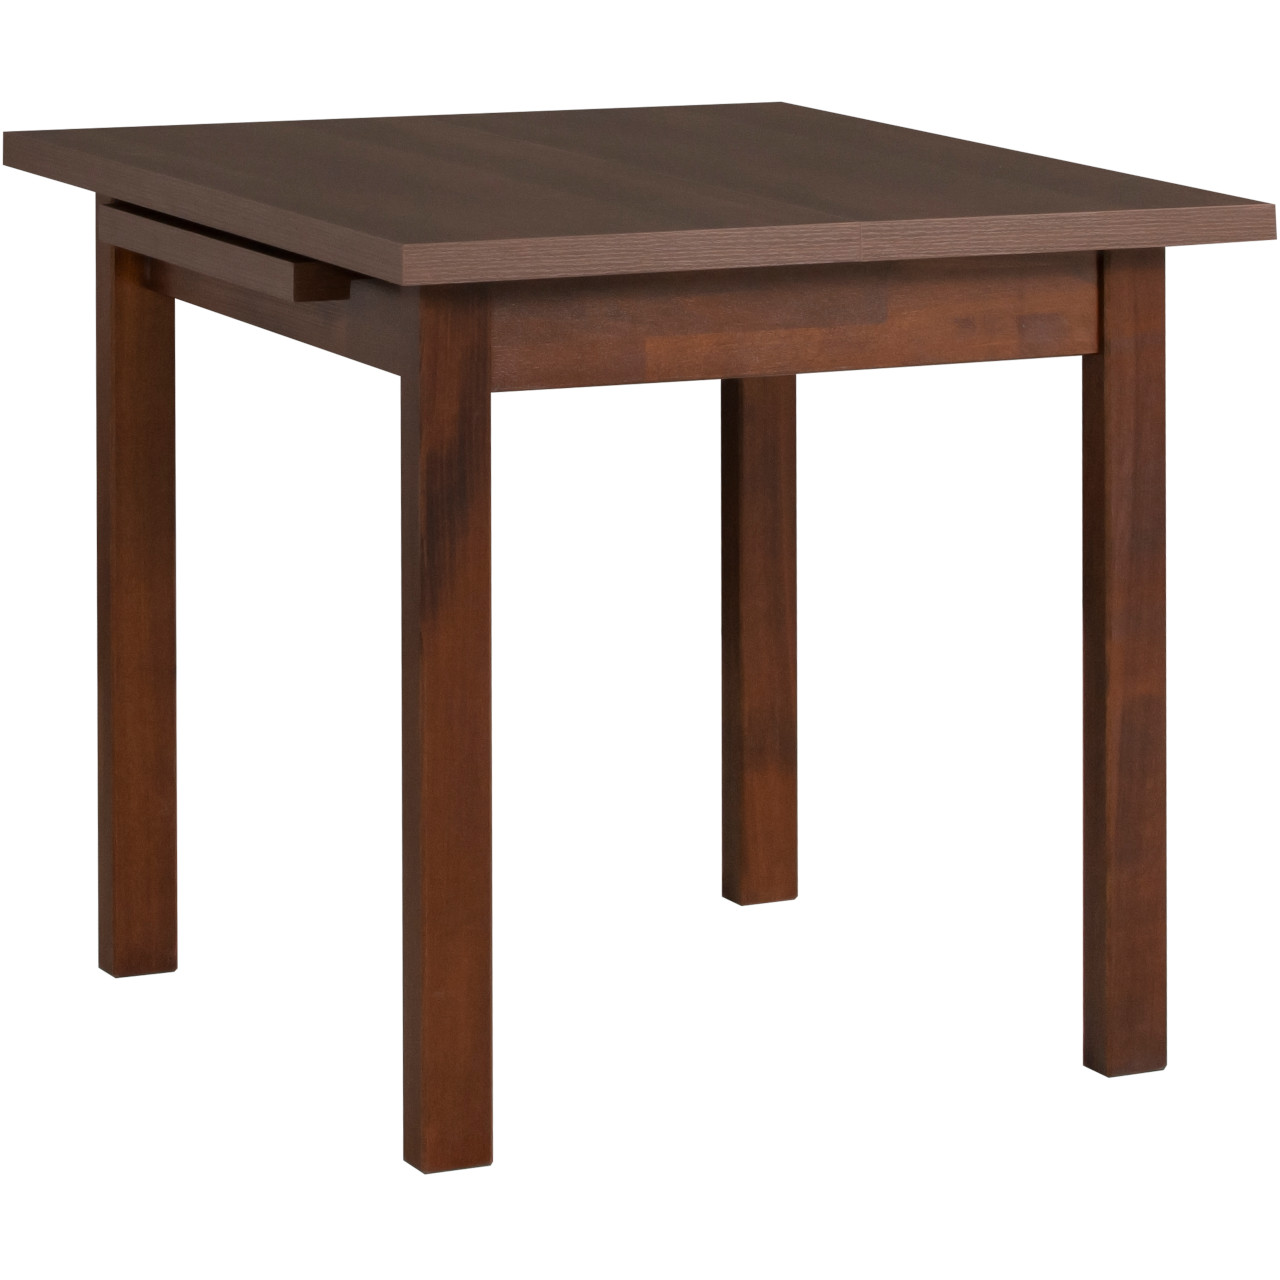 Table MAX 7 80x80/110 walnut laminate